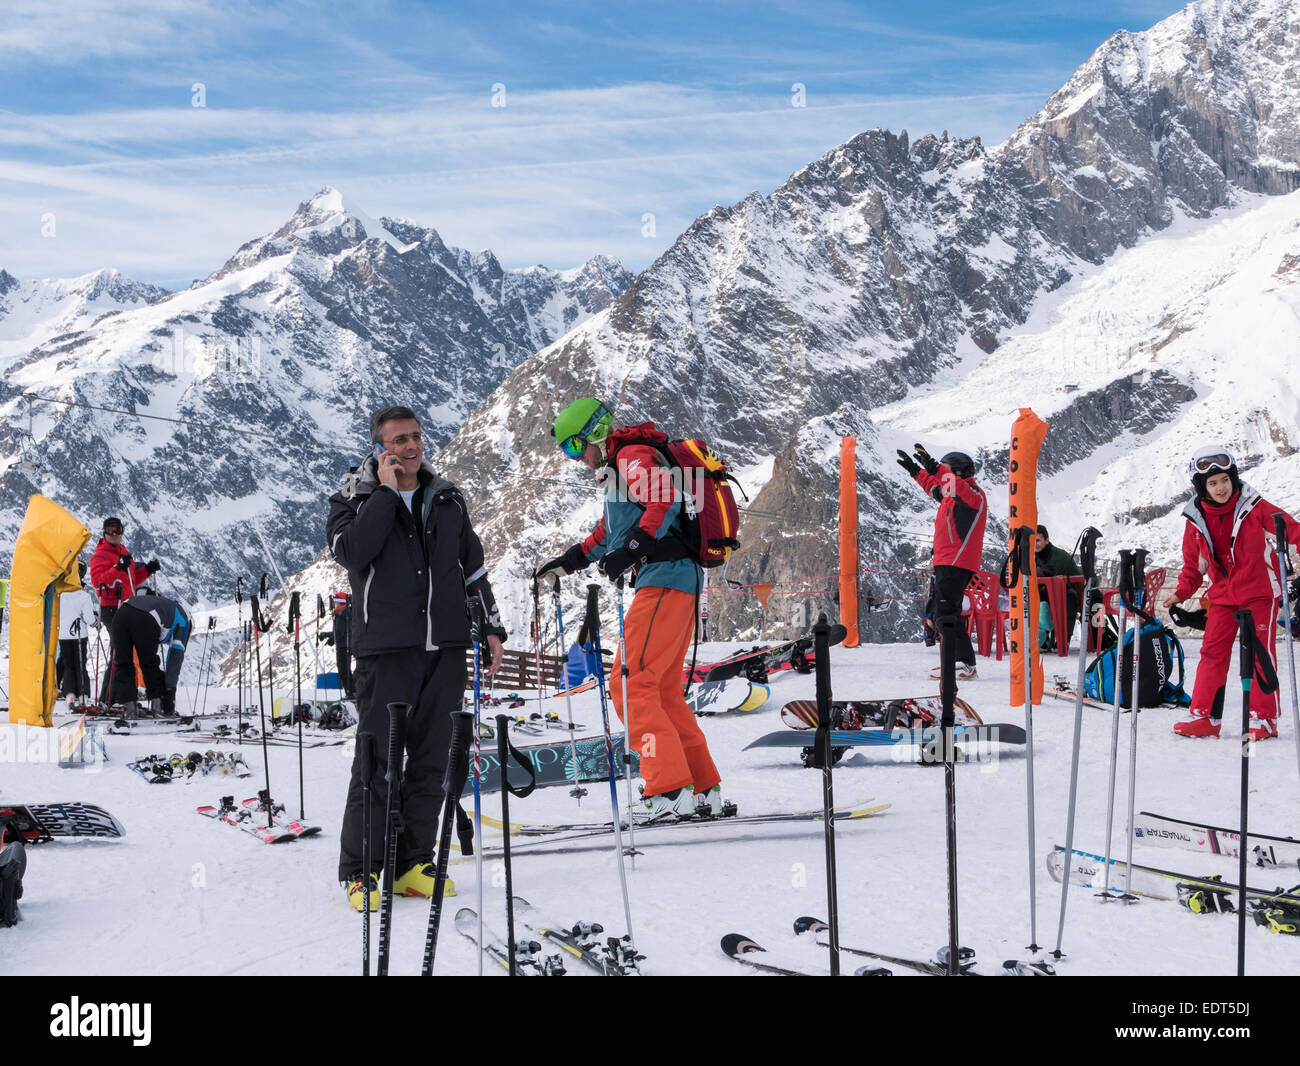 Les skis et les skieurs sur les pentes de neige avec le massif du Mont Blanc en Graian Alps derrière. Courmayeur, vallée d'aoste, Italie, Europe Banque D'Images